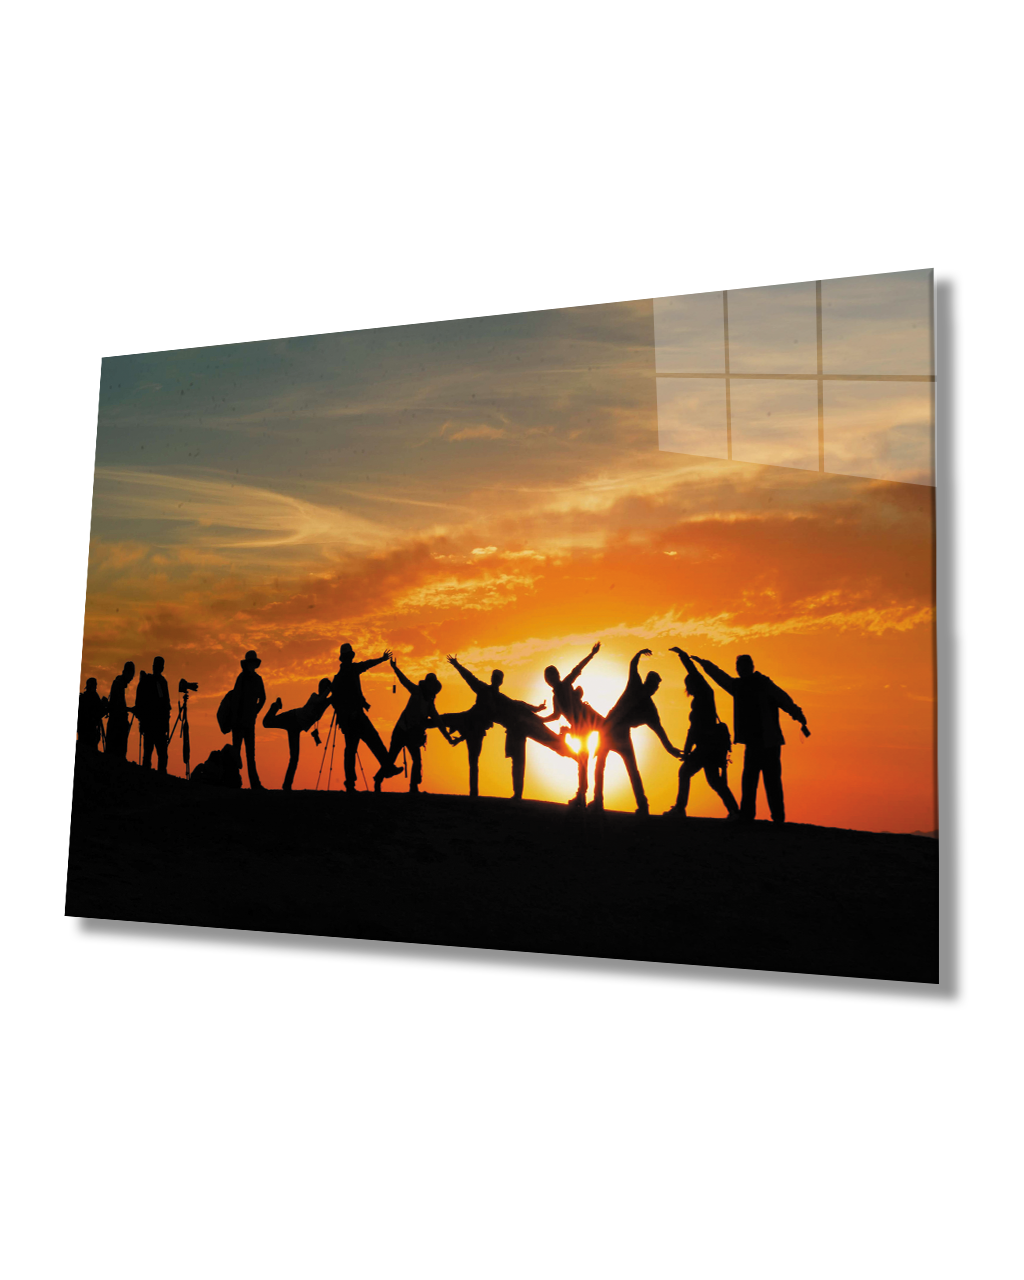 Gün Batımı Manzarasında Fotoğrafçılar Cam Tablo  4mm Dayanıklı Temperli Cam Photographers Glass Table 4mm Durable Tempered Glass In Sunset Landscape